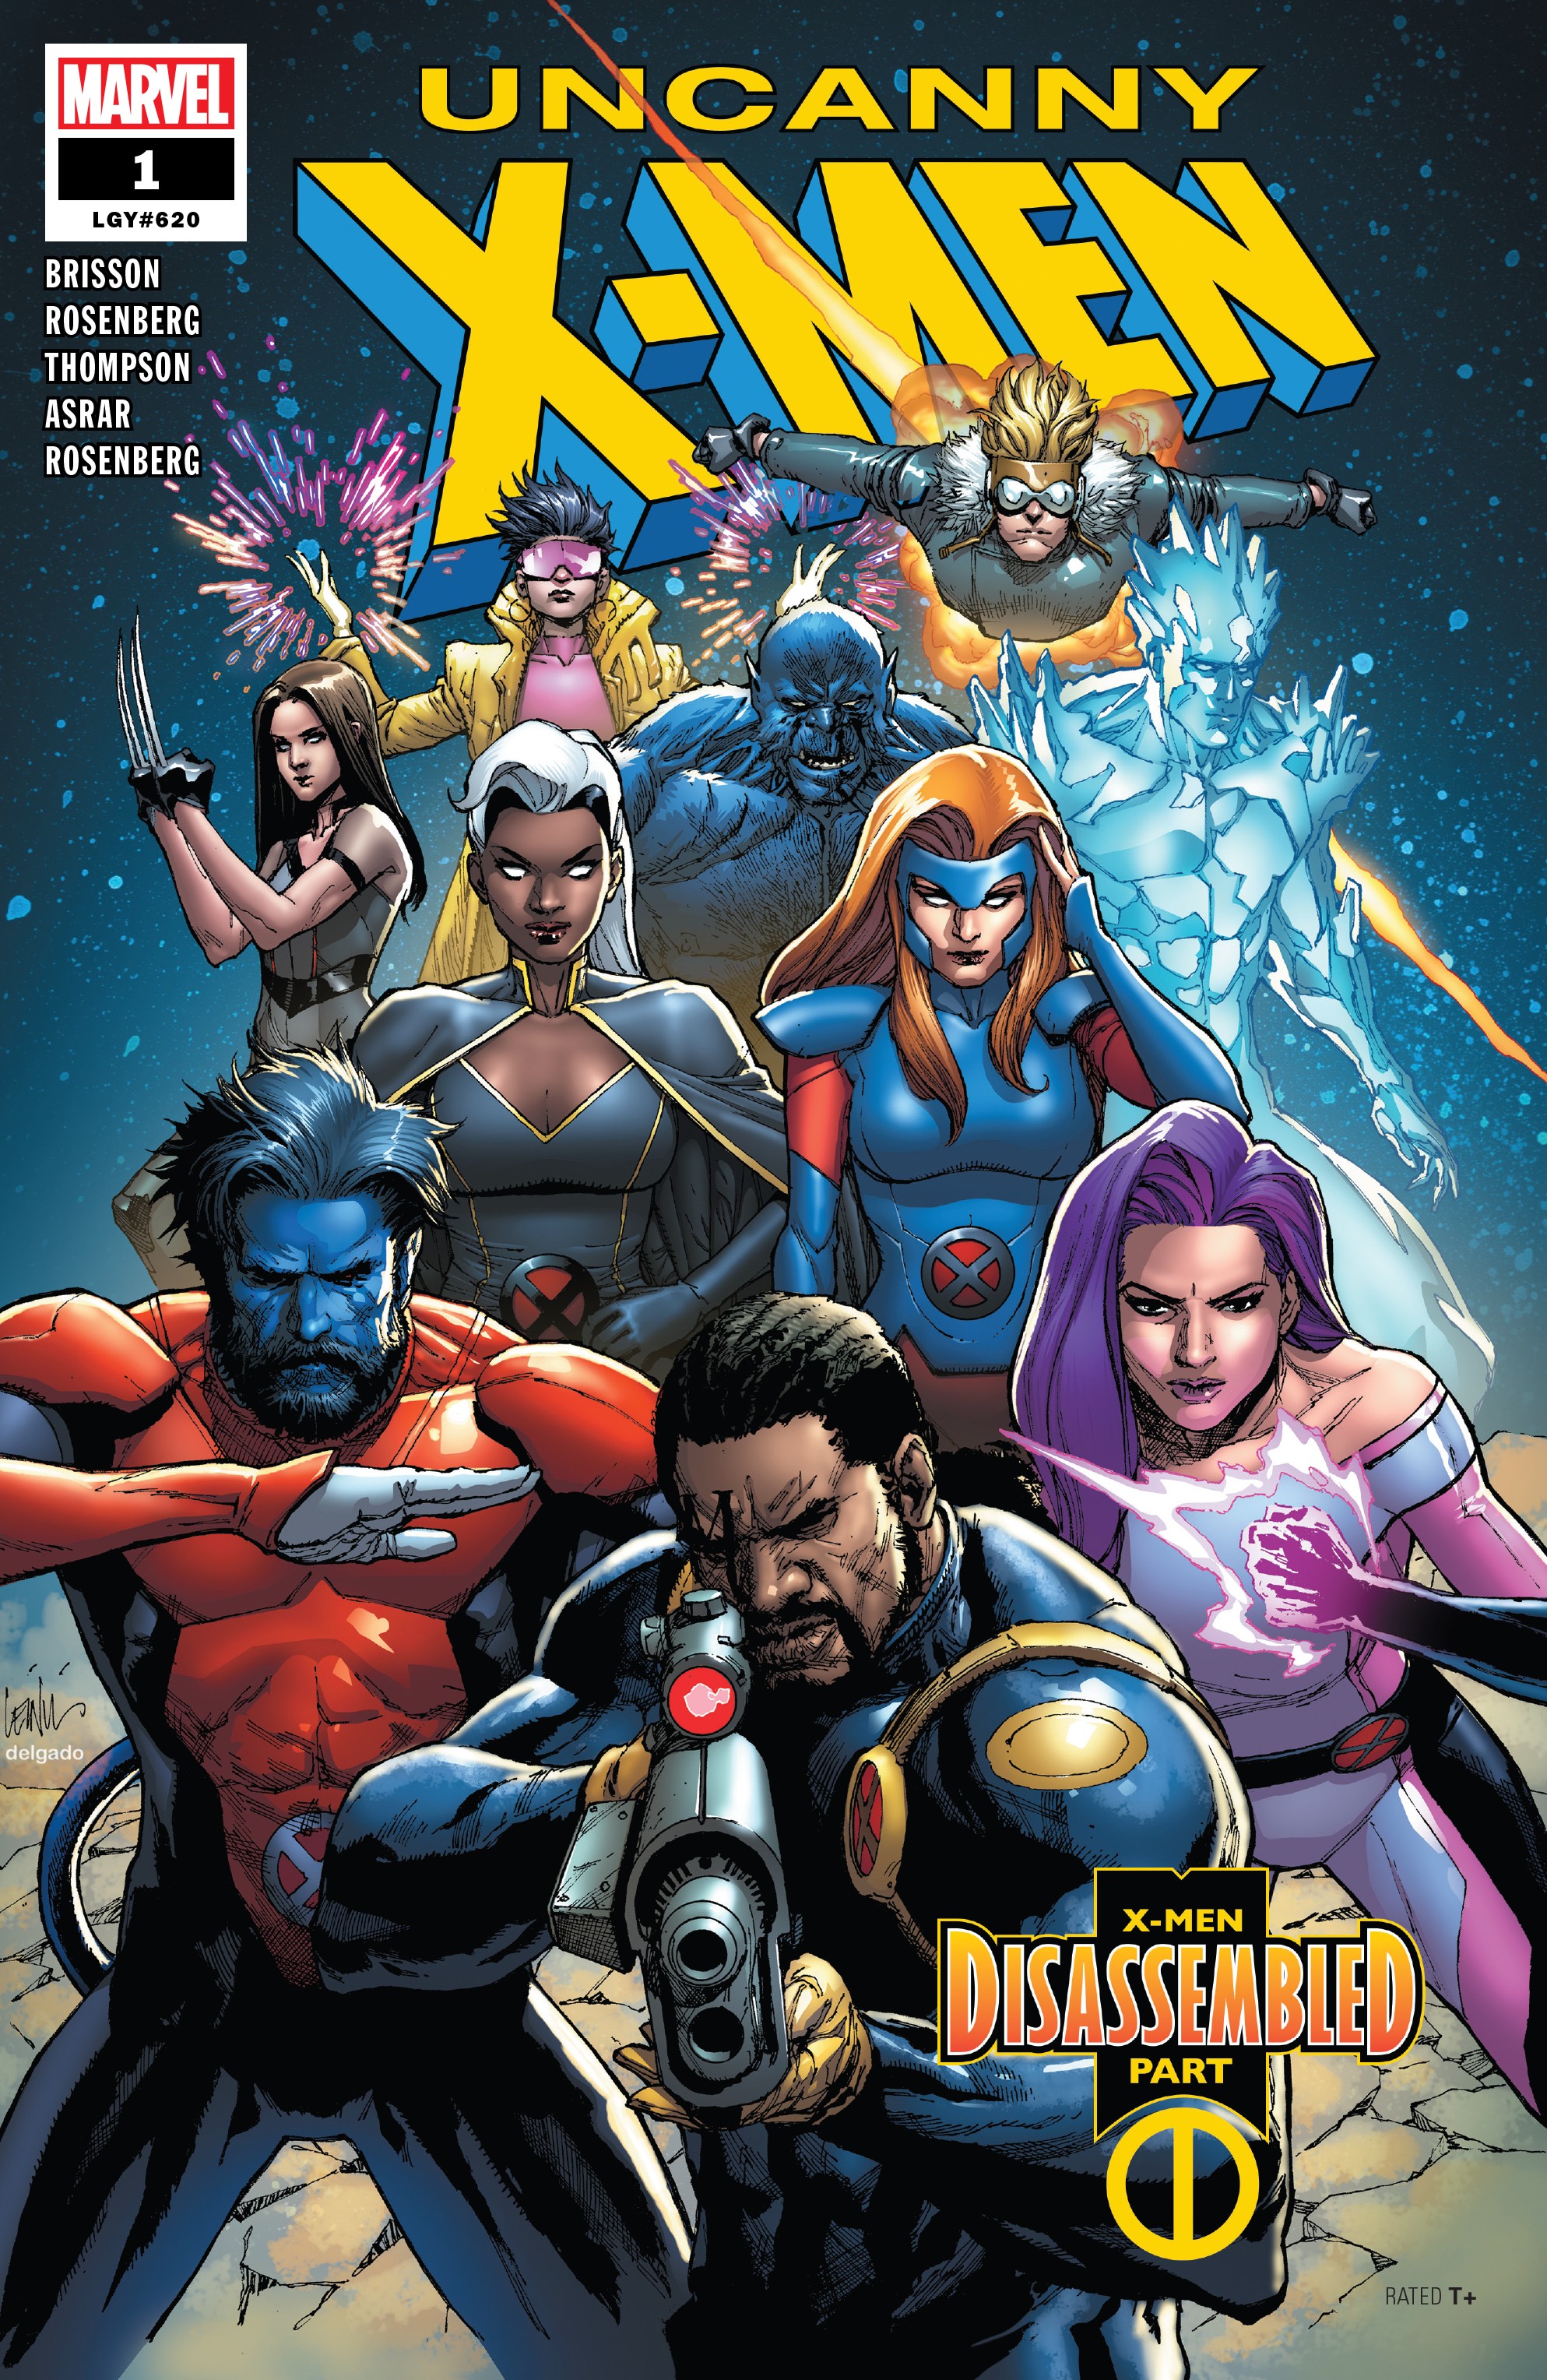 X-men comics online